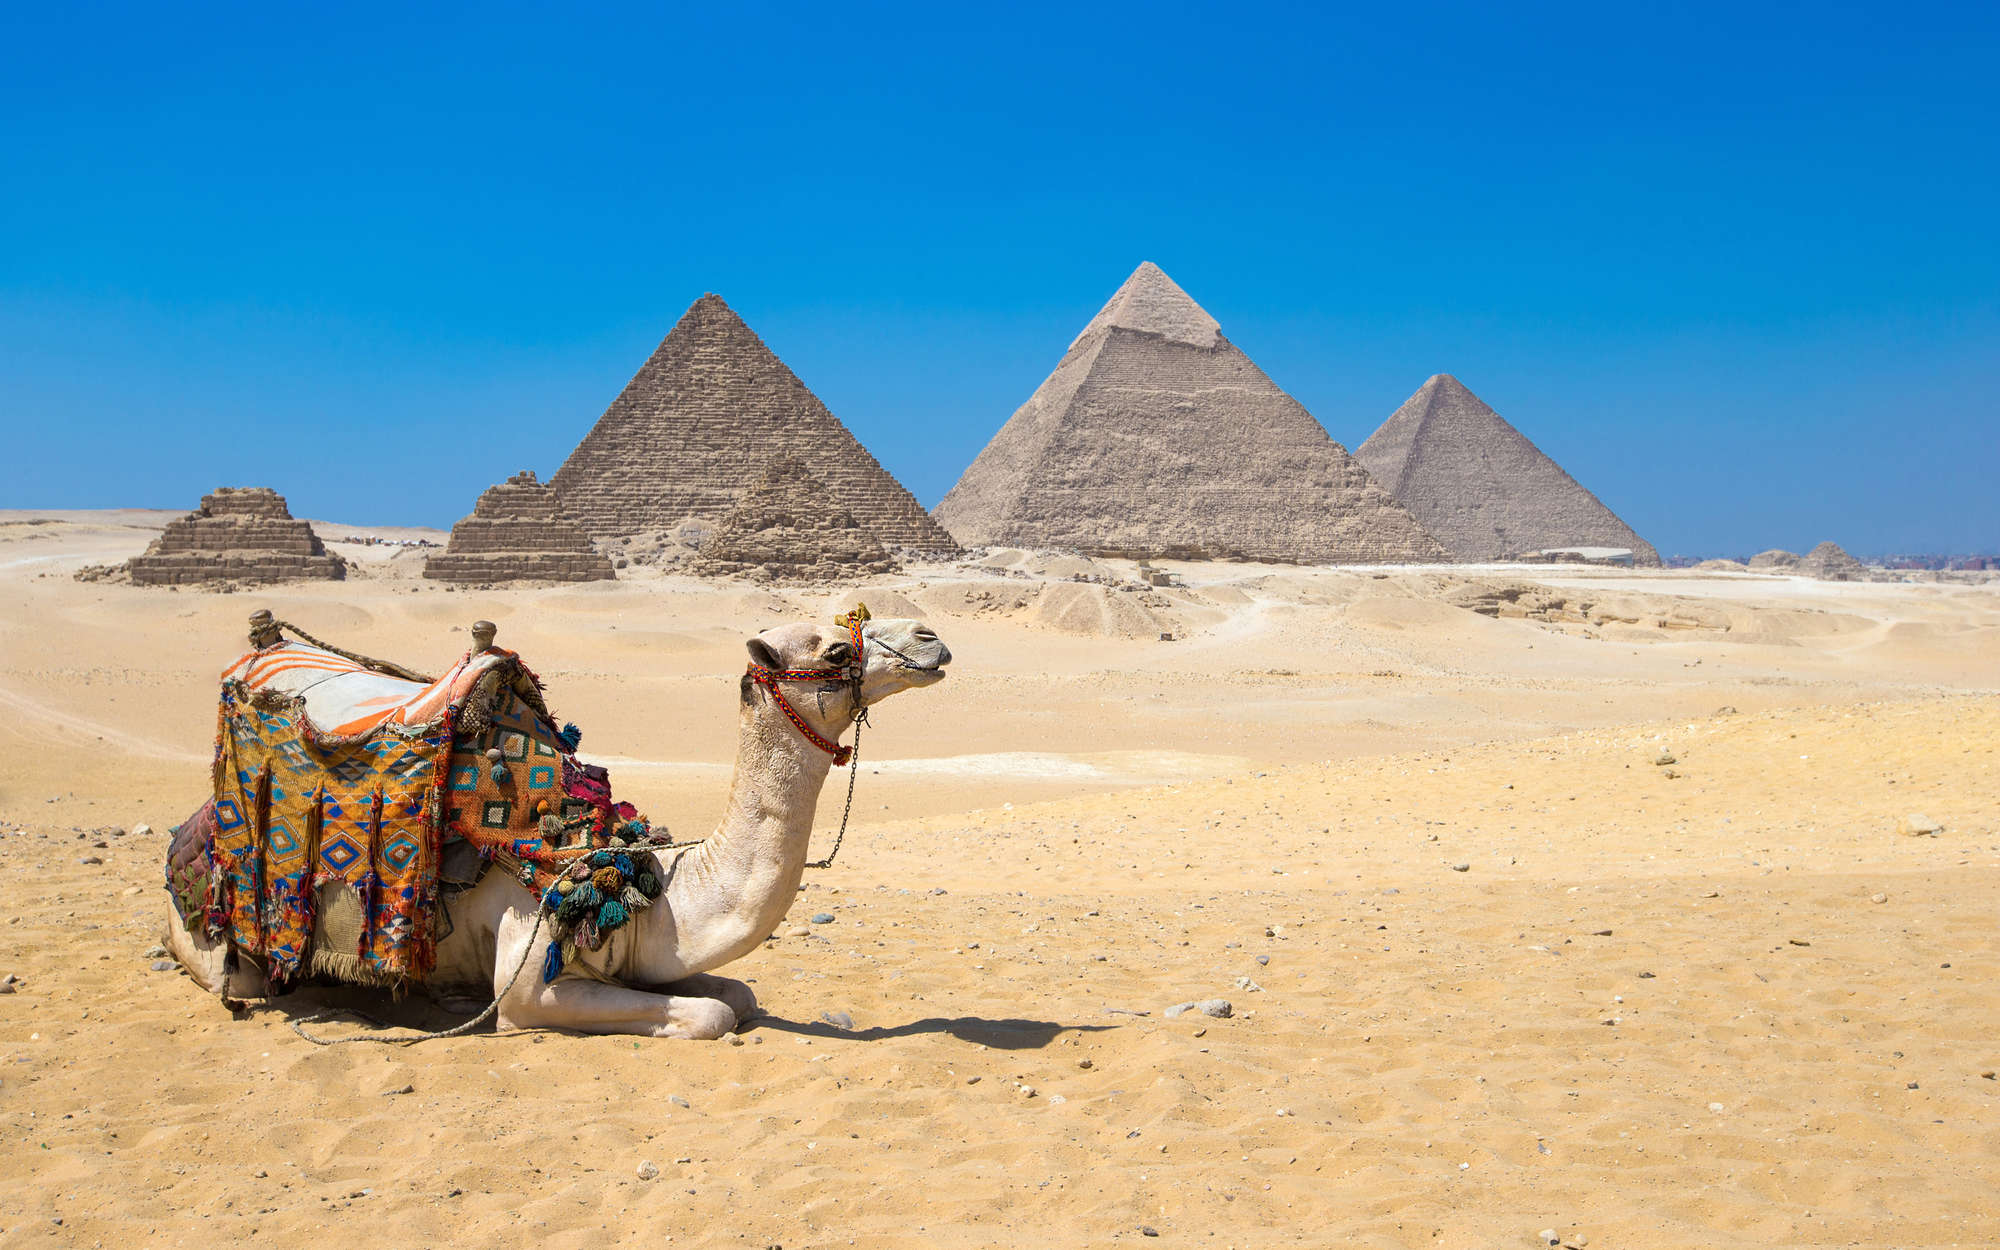             Papel pintable Pirámides de Giza con Camello - Premium Smooth Fleece
        